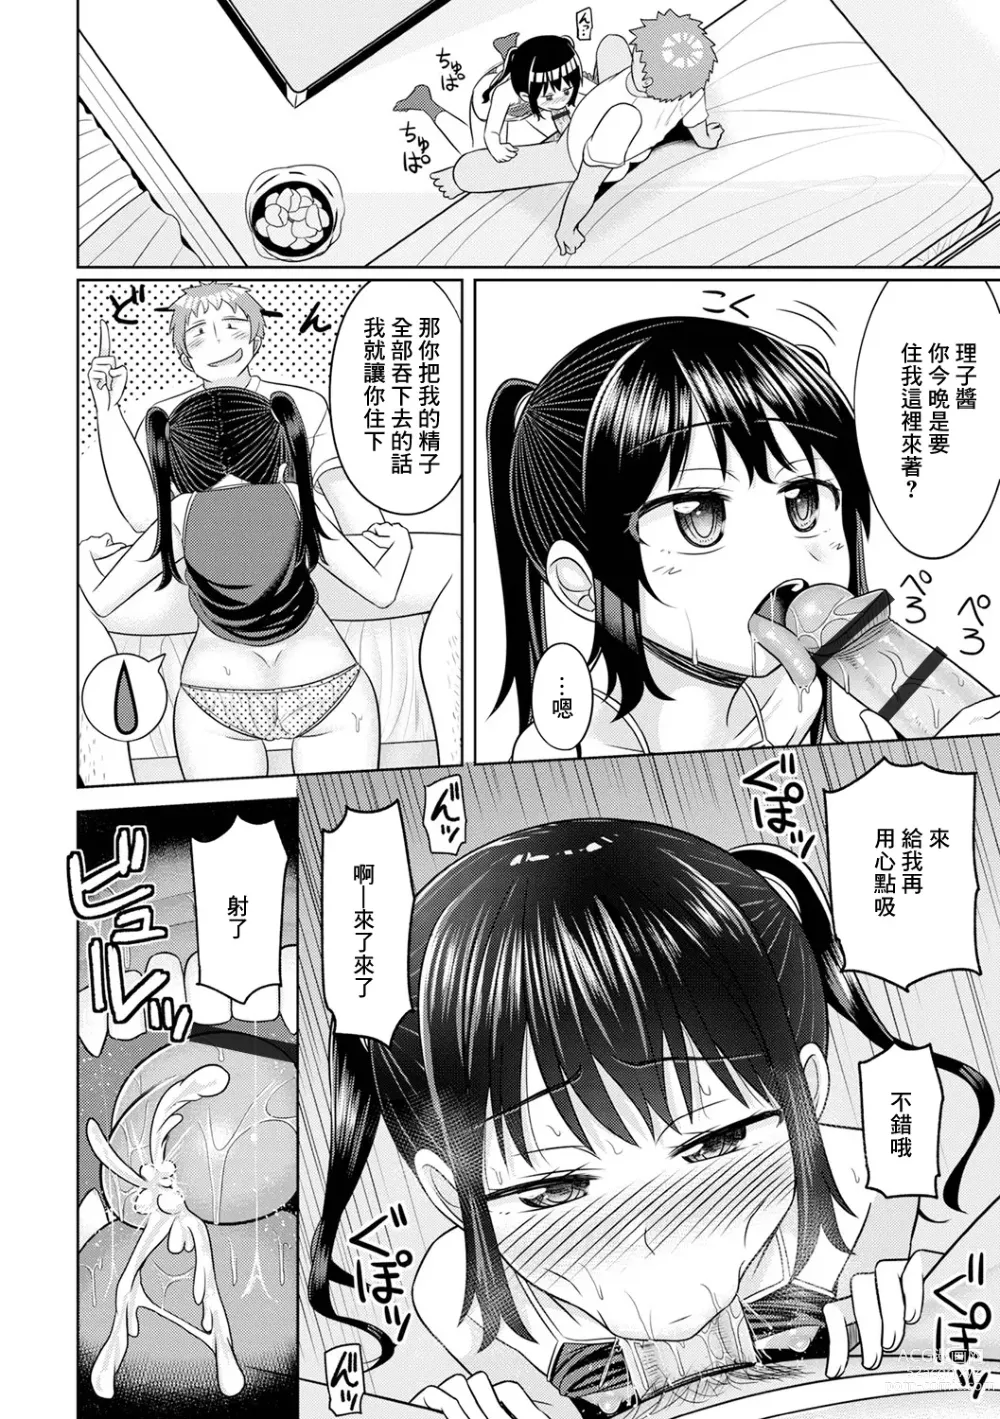 Page 6 of doujinshi Tonari no Riko-chan